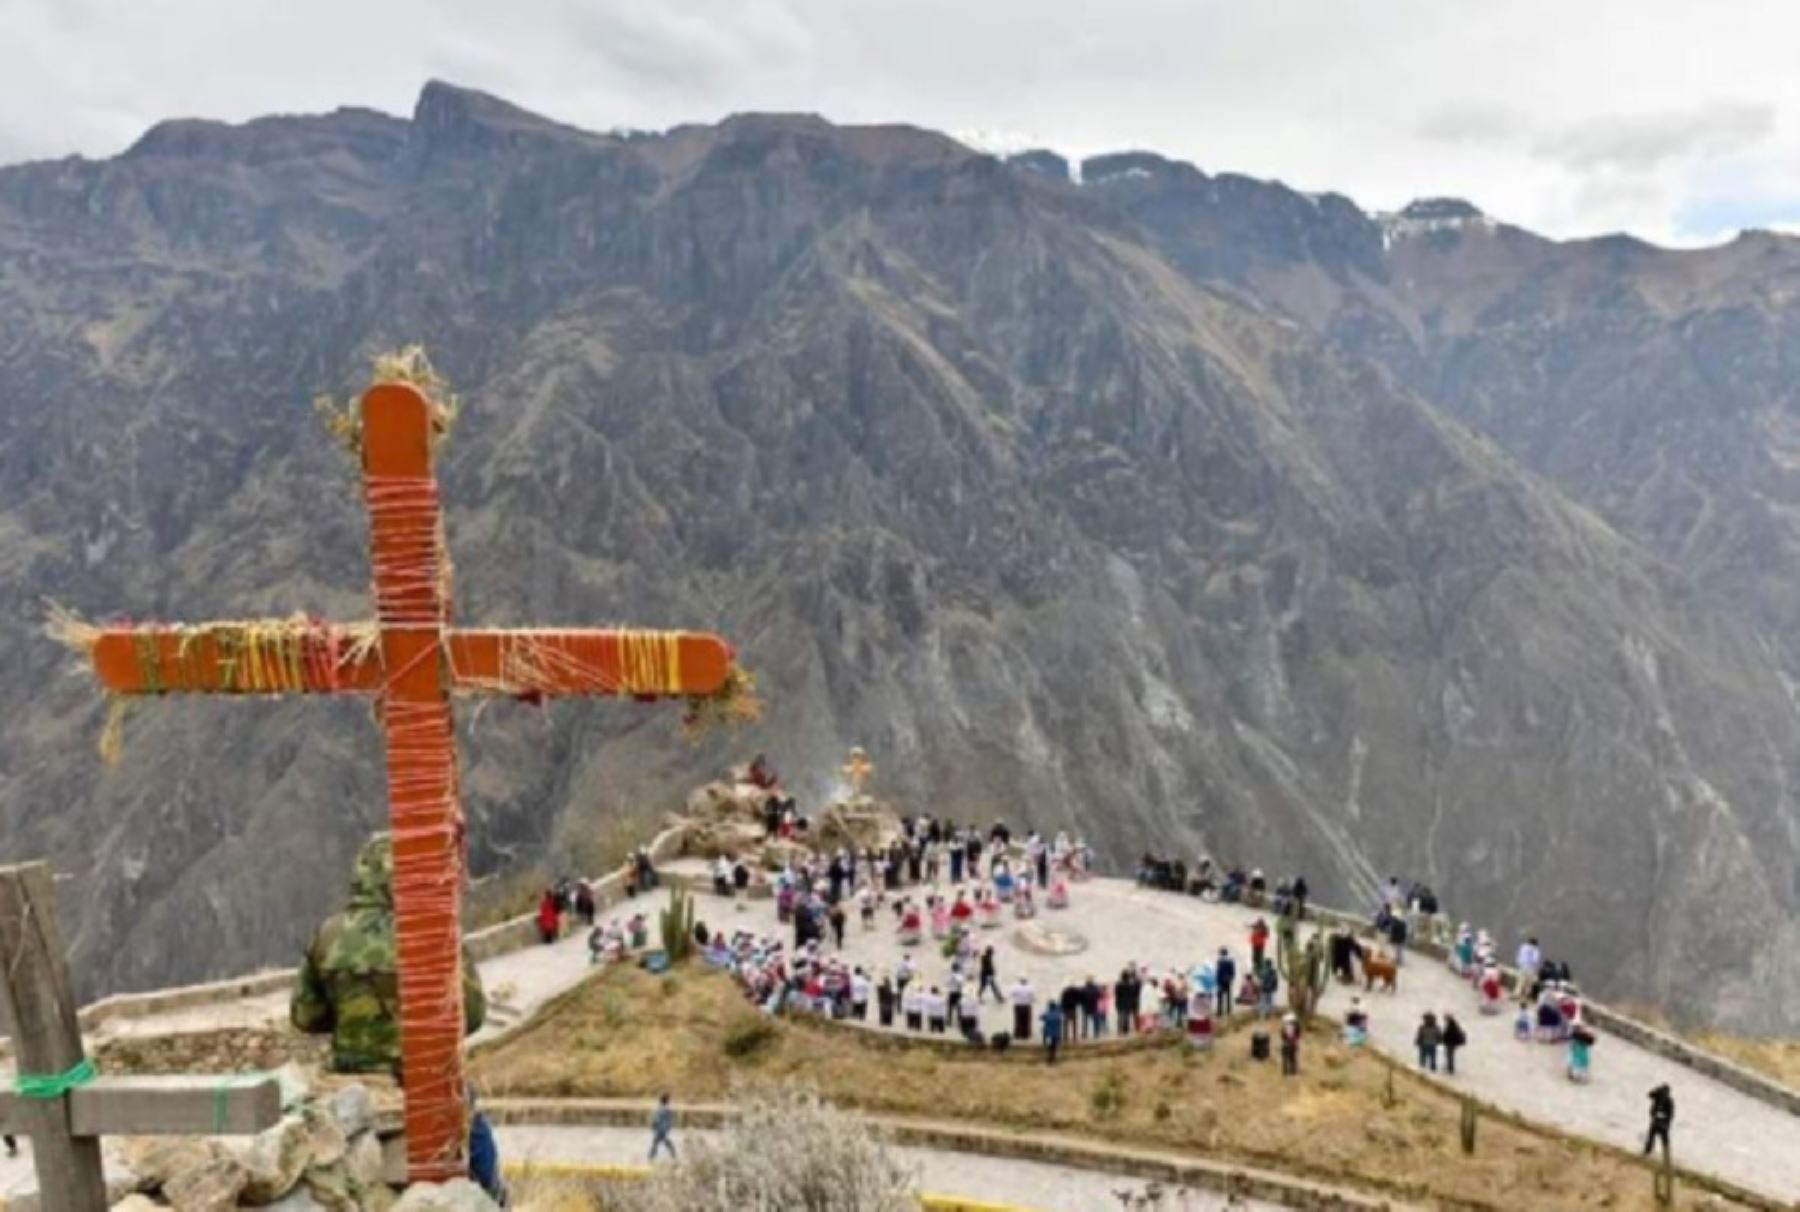 El destino turístico "Valle del Colca", ubicado en Arequipa obtuvo la categoría 4 que otorga el Ministerio de Comercio Exterior y Turismo (Mincetur), máxima distinción que ostenta un recurso turístico en el país de gran importancia nacional e internacional.